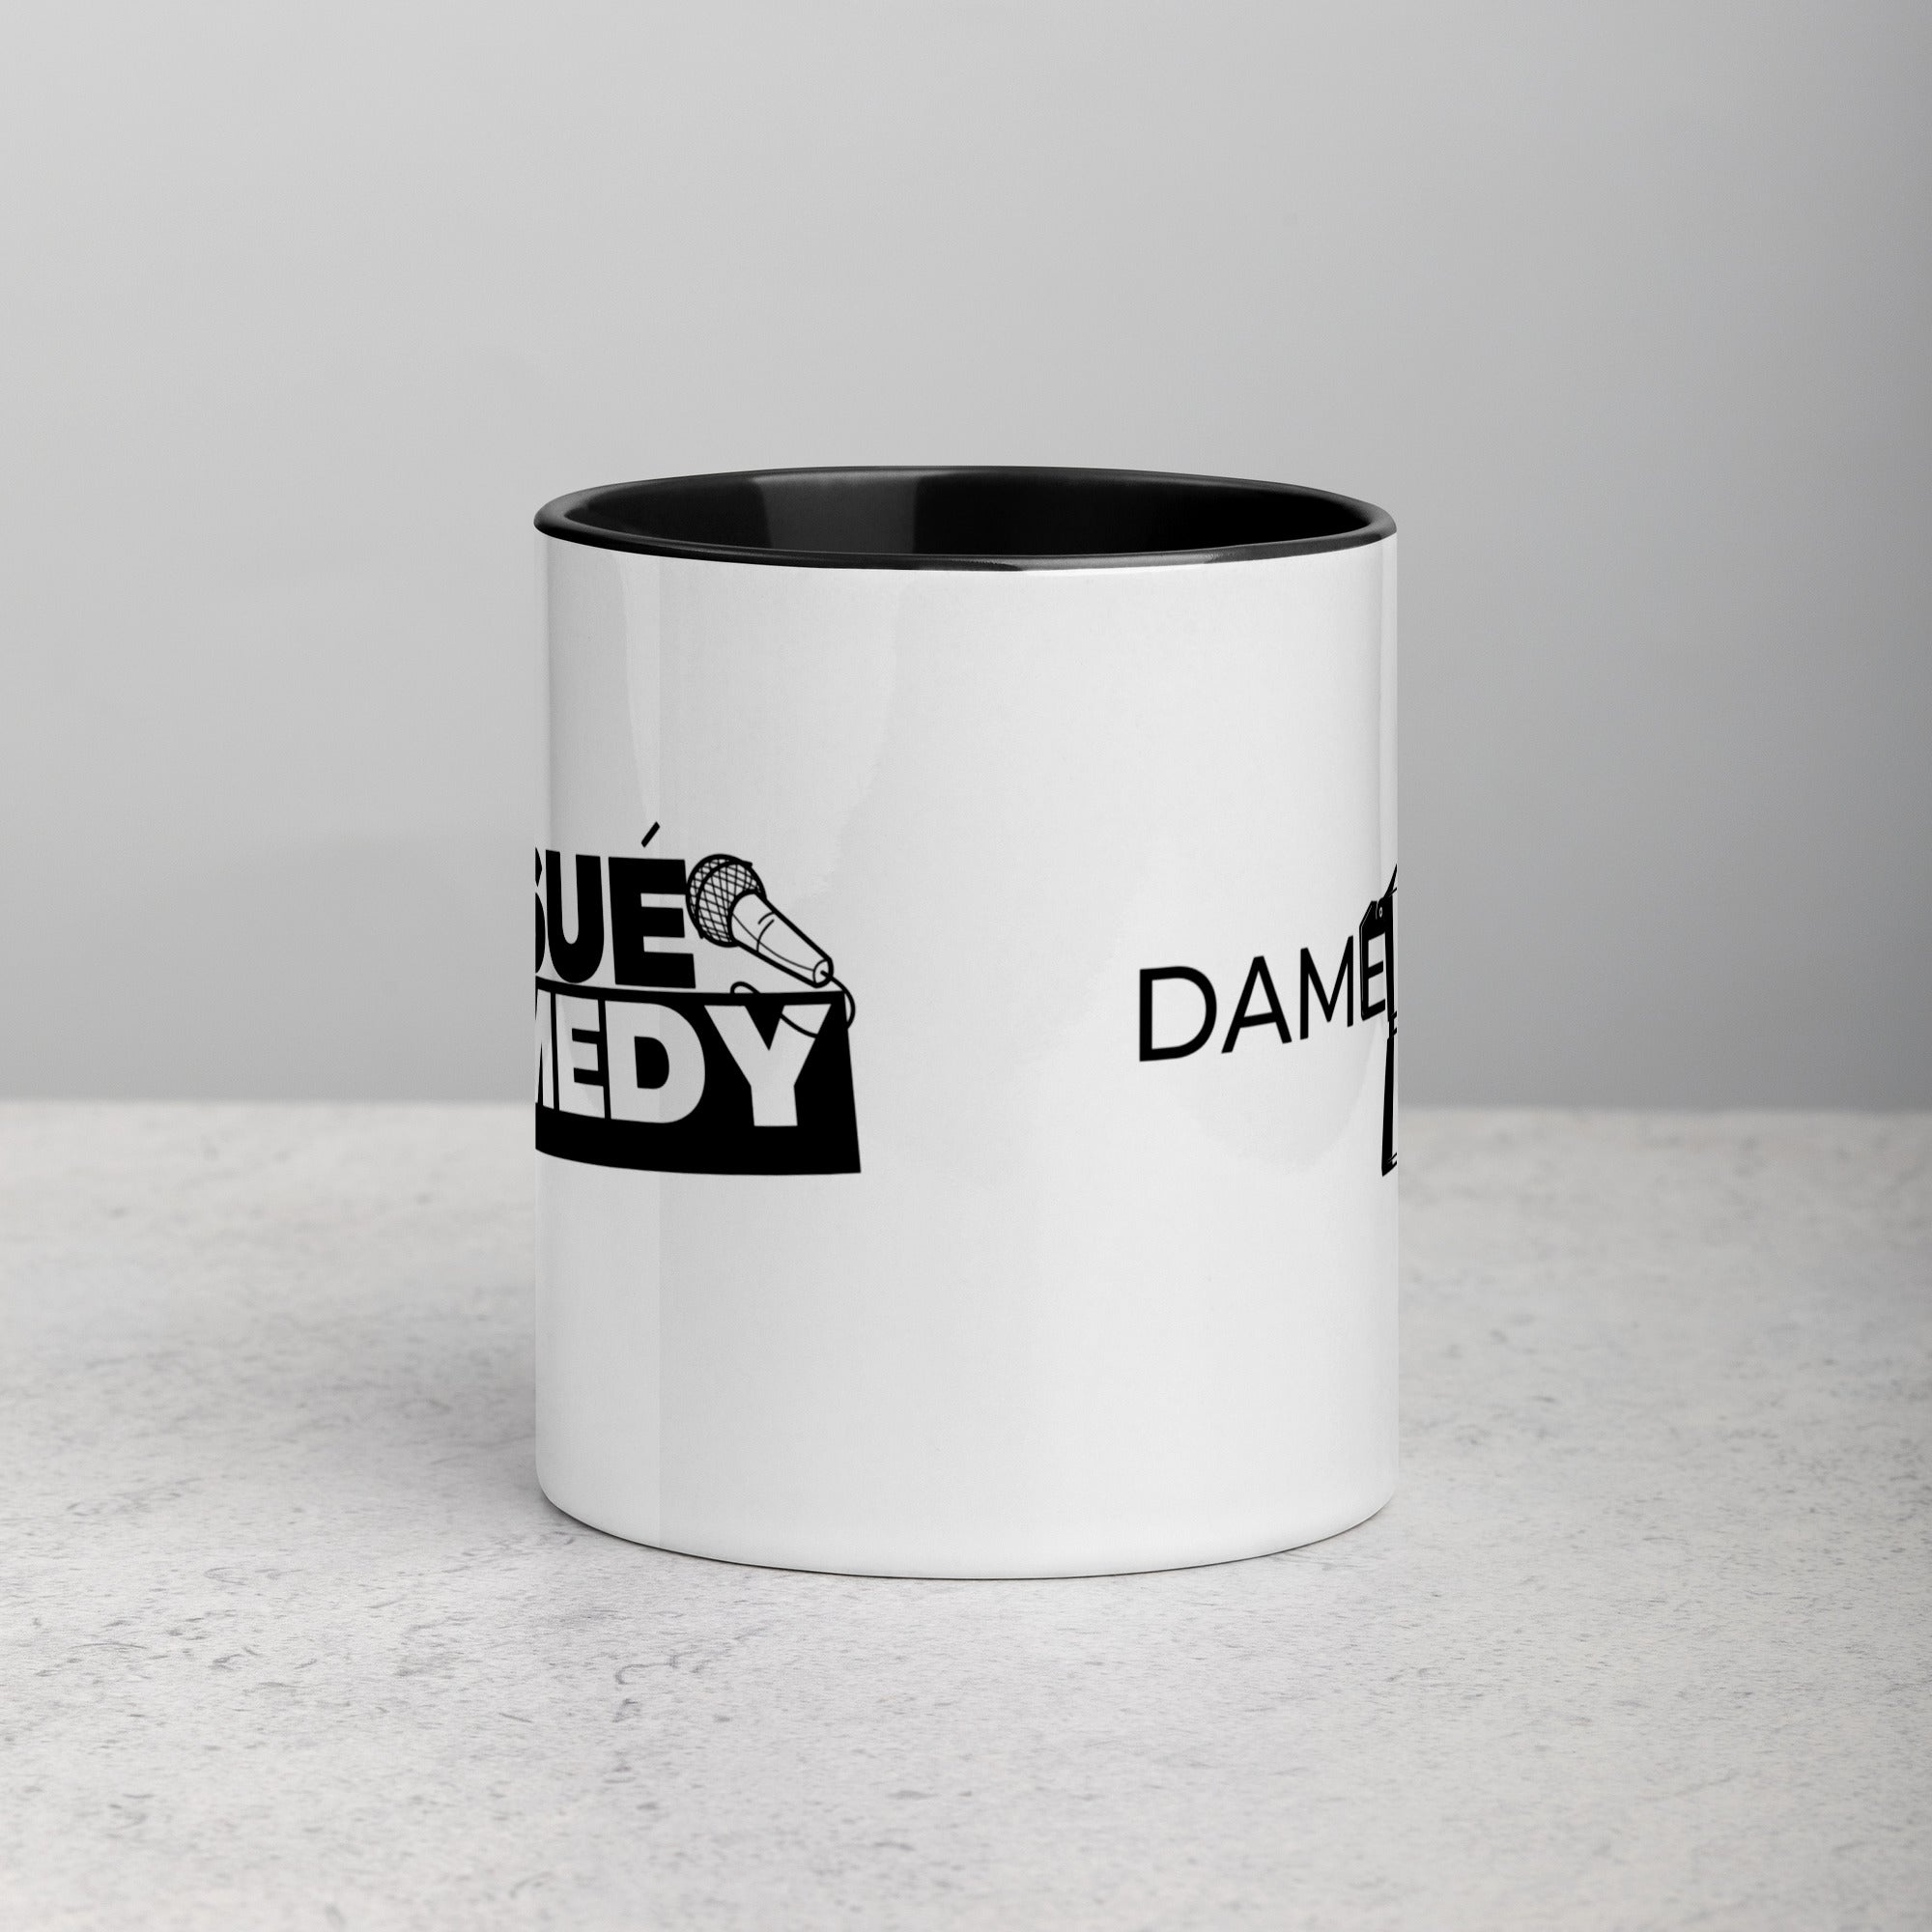 Dame Cafe + Josue Comedy Logo Mug with Color Inside